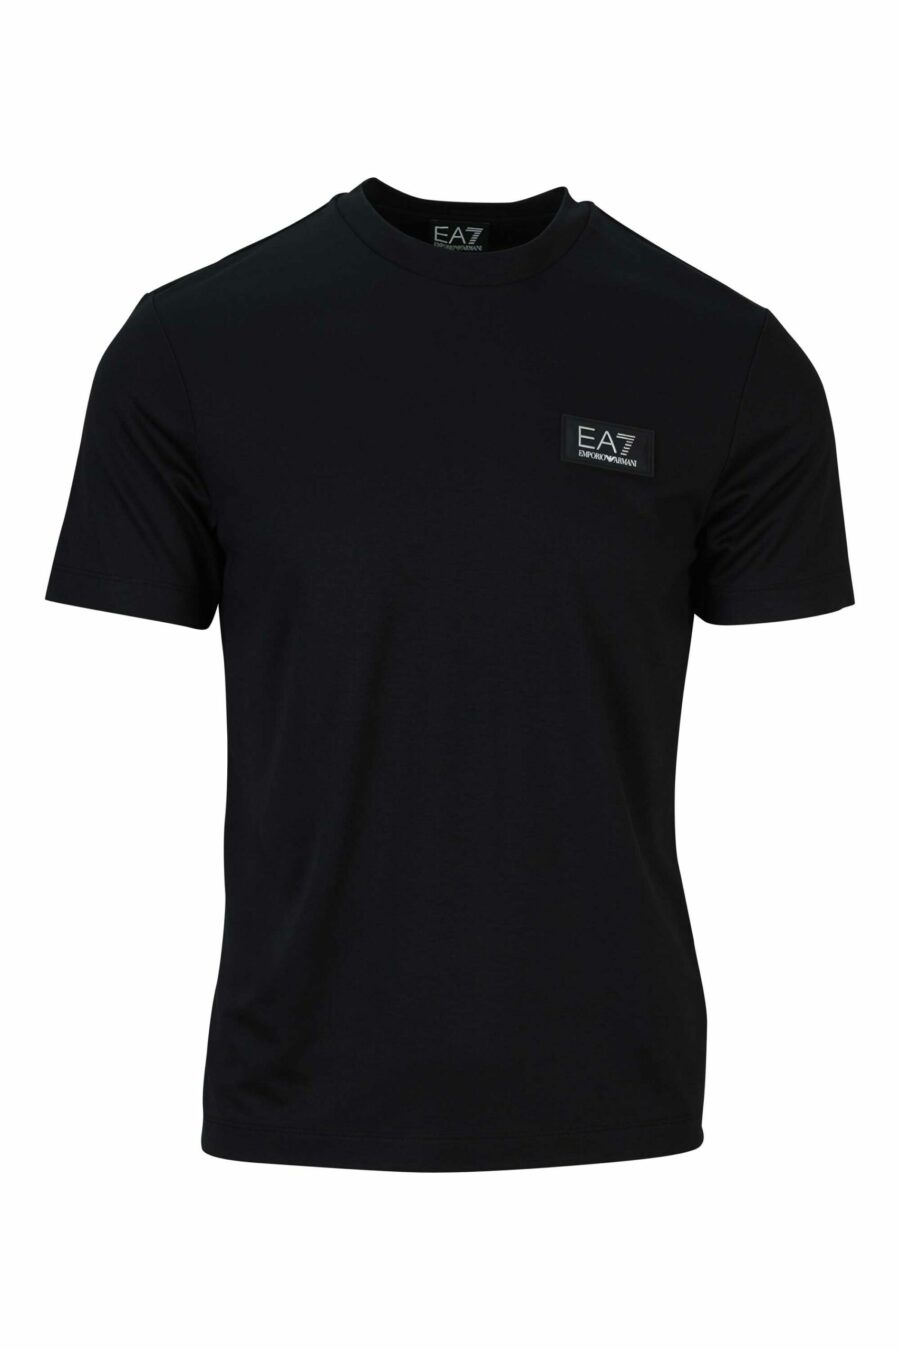 T-shirt noir oversize avec mini-logo "lux identity" blanc sur plaque noire - 8058947508570 1 scaled